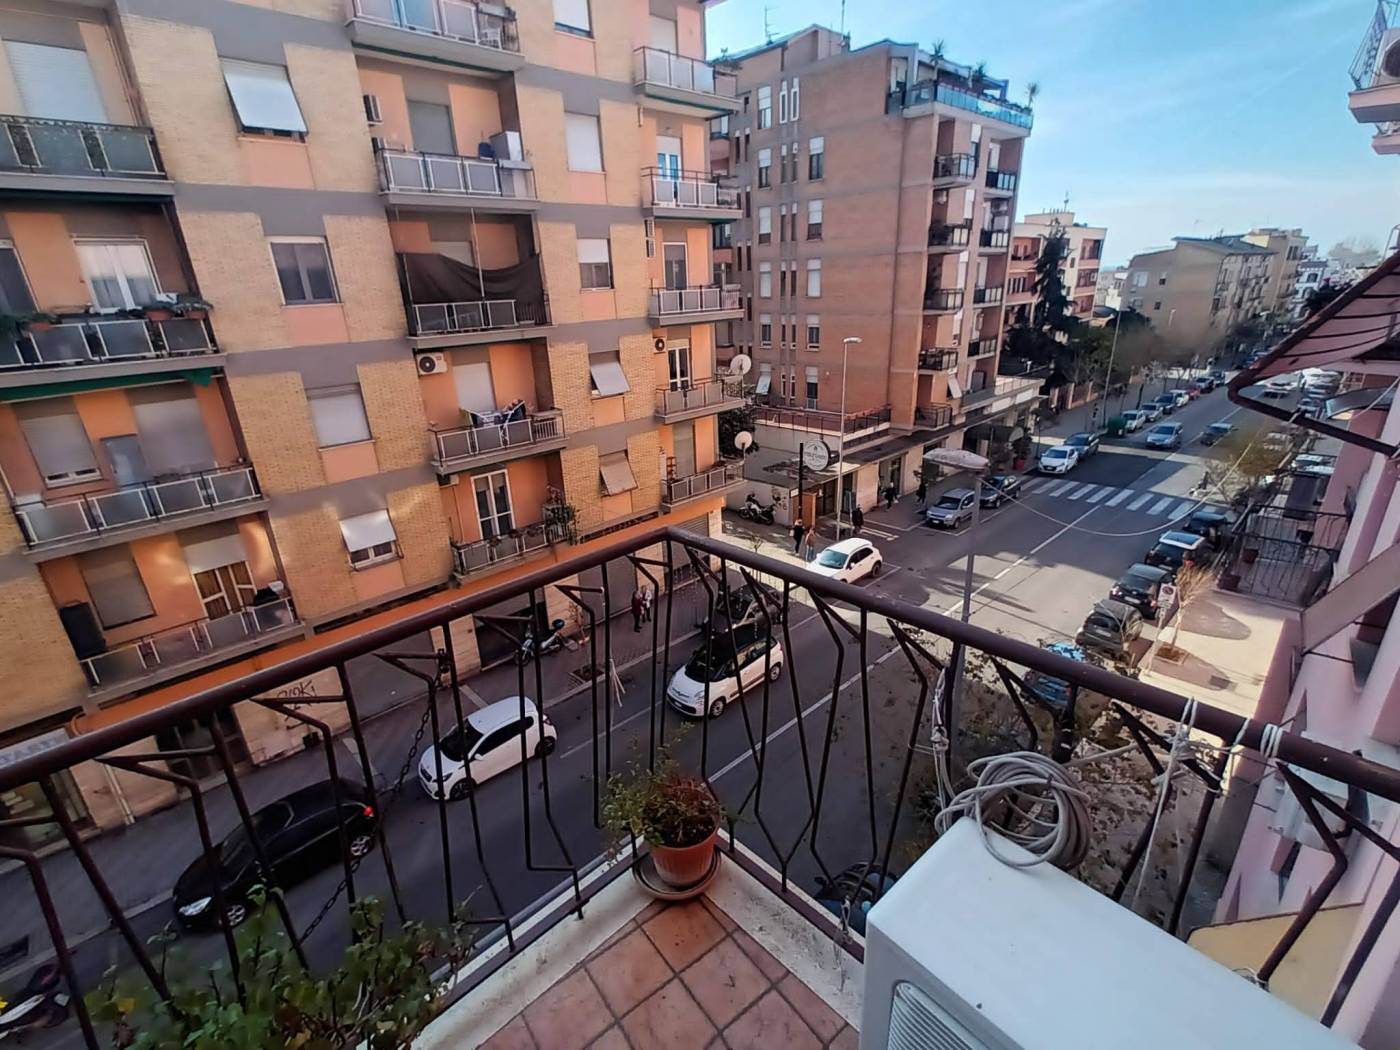 L'Agenzia Immobiliare Tecnoedil, propone in vendita in zona centro: Viale Giacomo Matteotti, un appartamento posto al 3°P. senza ascensore. 